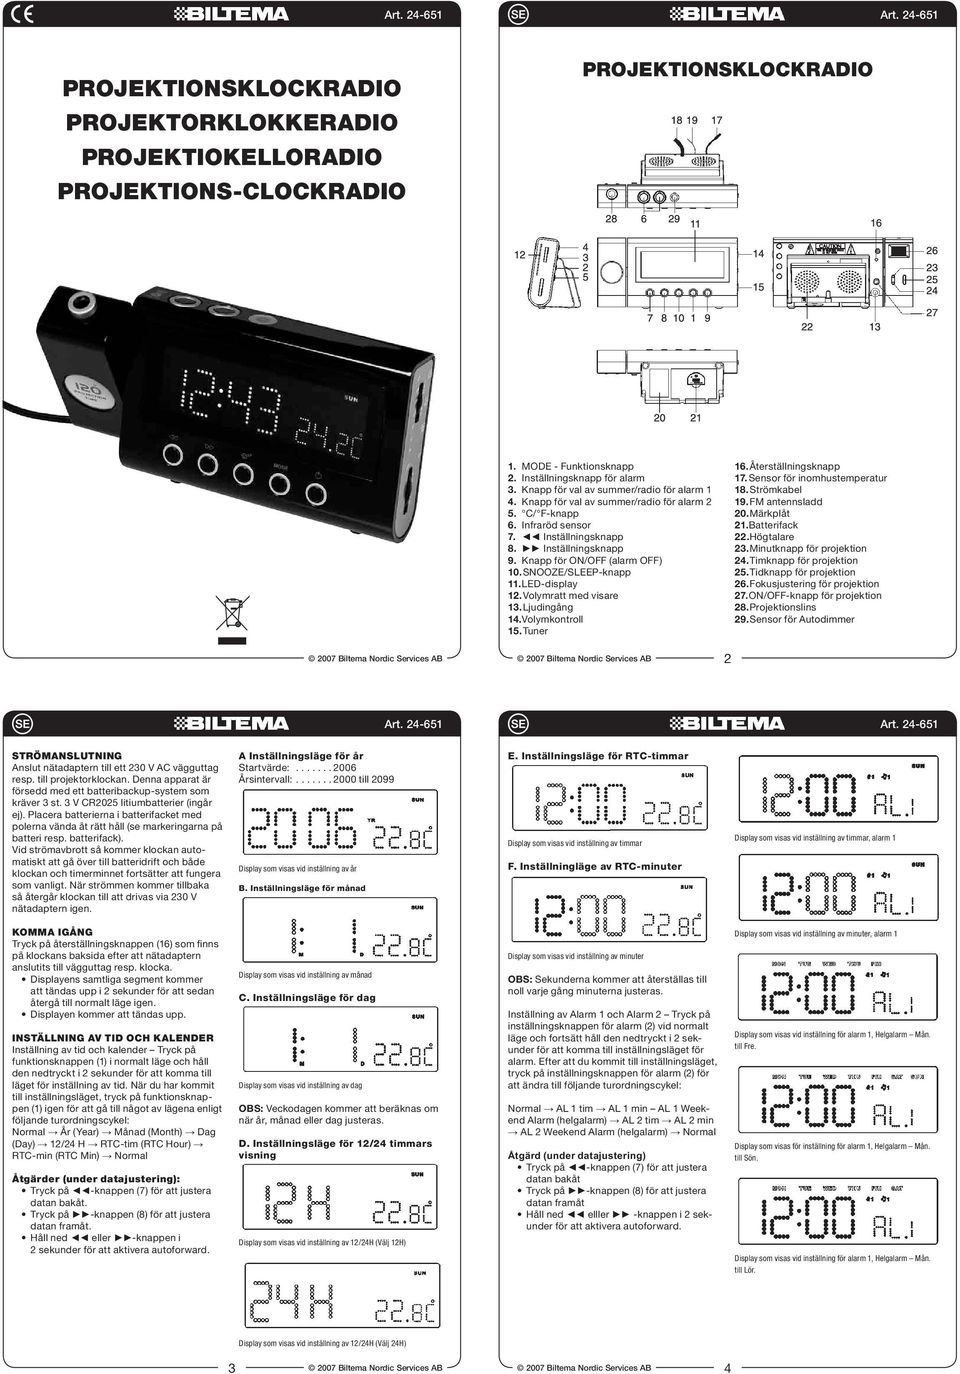 SNOOZE/SLEEP-knapp 11. LED-display 12. Volymratt med visare 13. Ljudingång 14. Volymkontroll 15. Tuner 16. Återställningsknapp 17. Sensor för inomhustemperatur 18. Strömkabel 19. FM antennsladd 20.